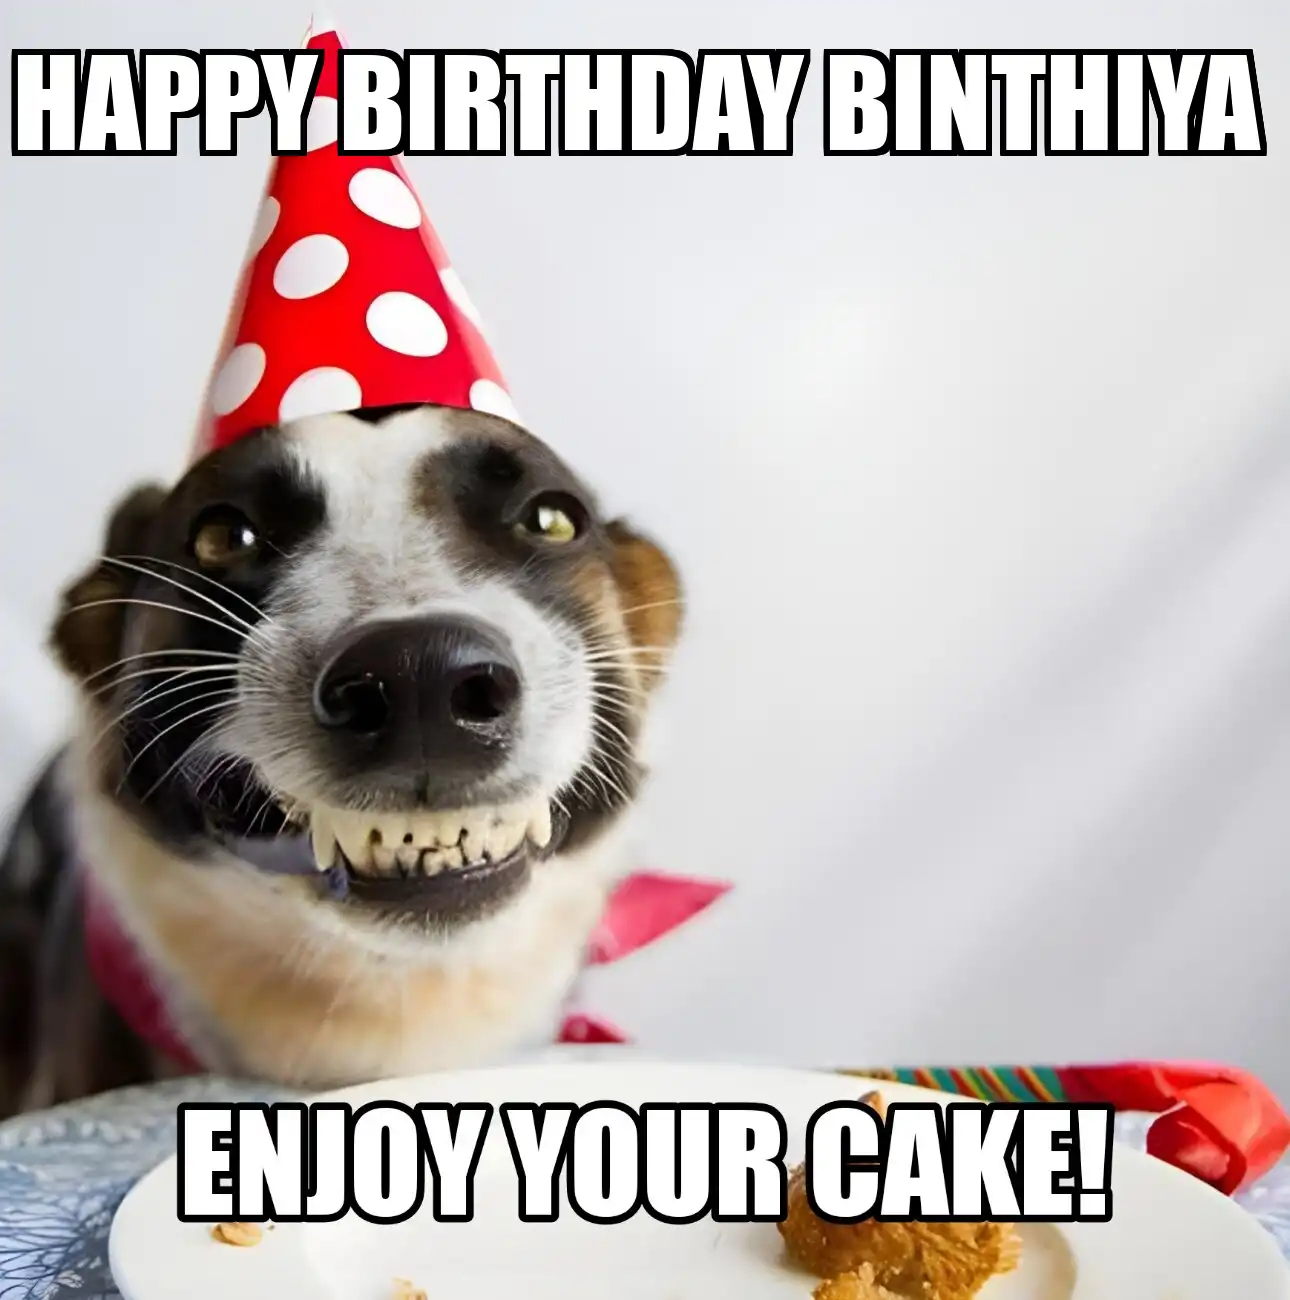 Happy Birthday Binthiya Enjoy Your Cake Dog Meme